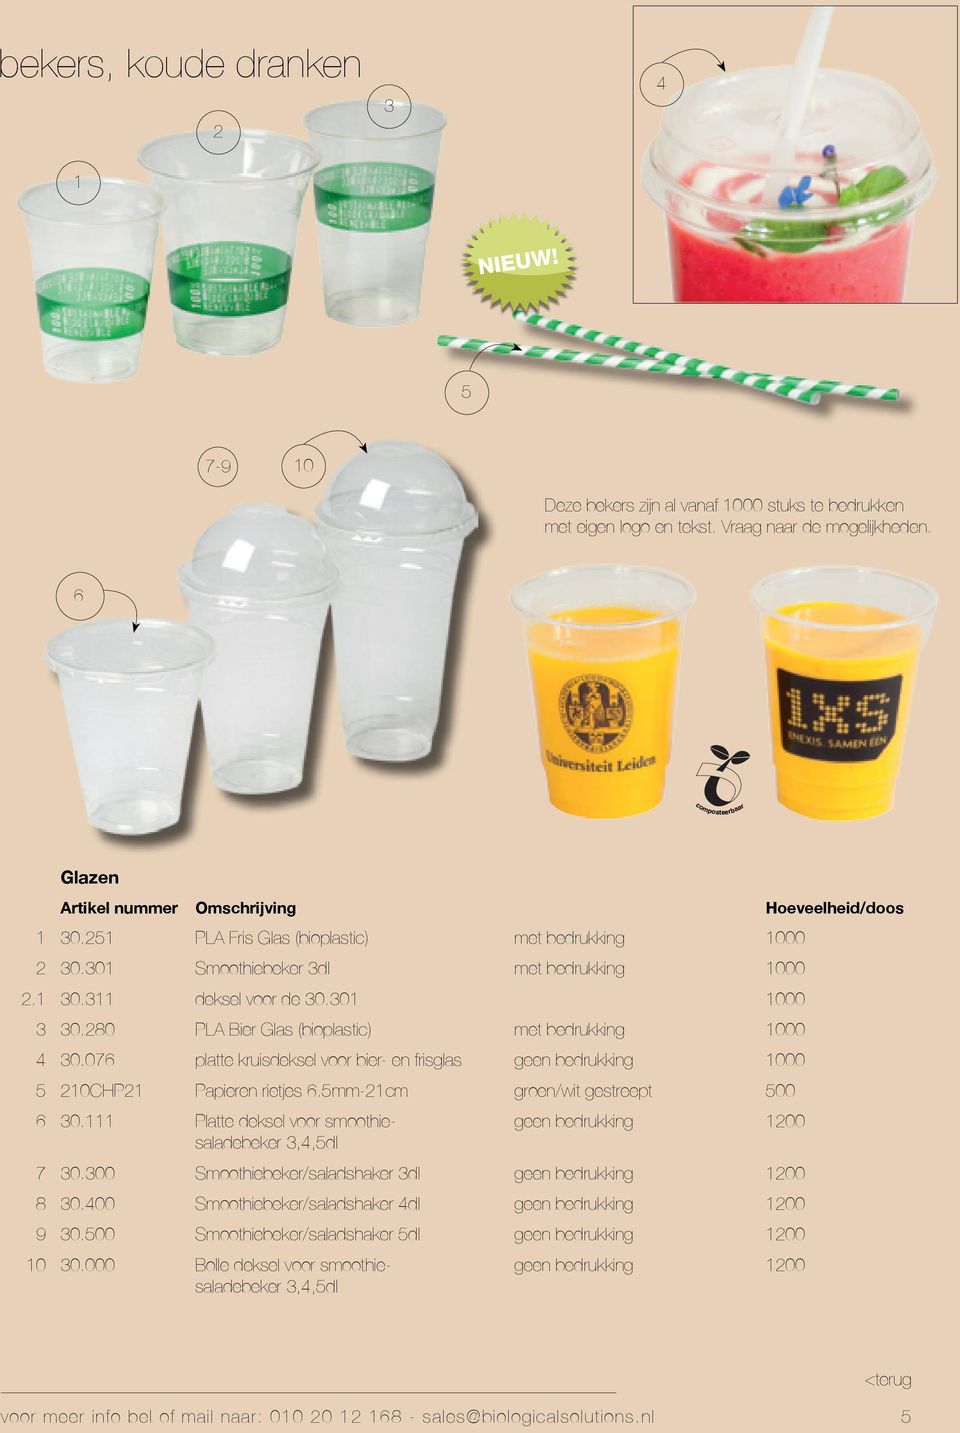 80 PLA Bier Glas (bioplastic) met bedrukking 000 0.07 platte kruisdeksel voor bier- en frisglas geen bedrukking 000 0CHP Papieren rietjes.mm-cm groen/wit gestreept 00 0.